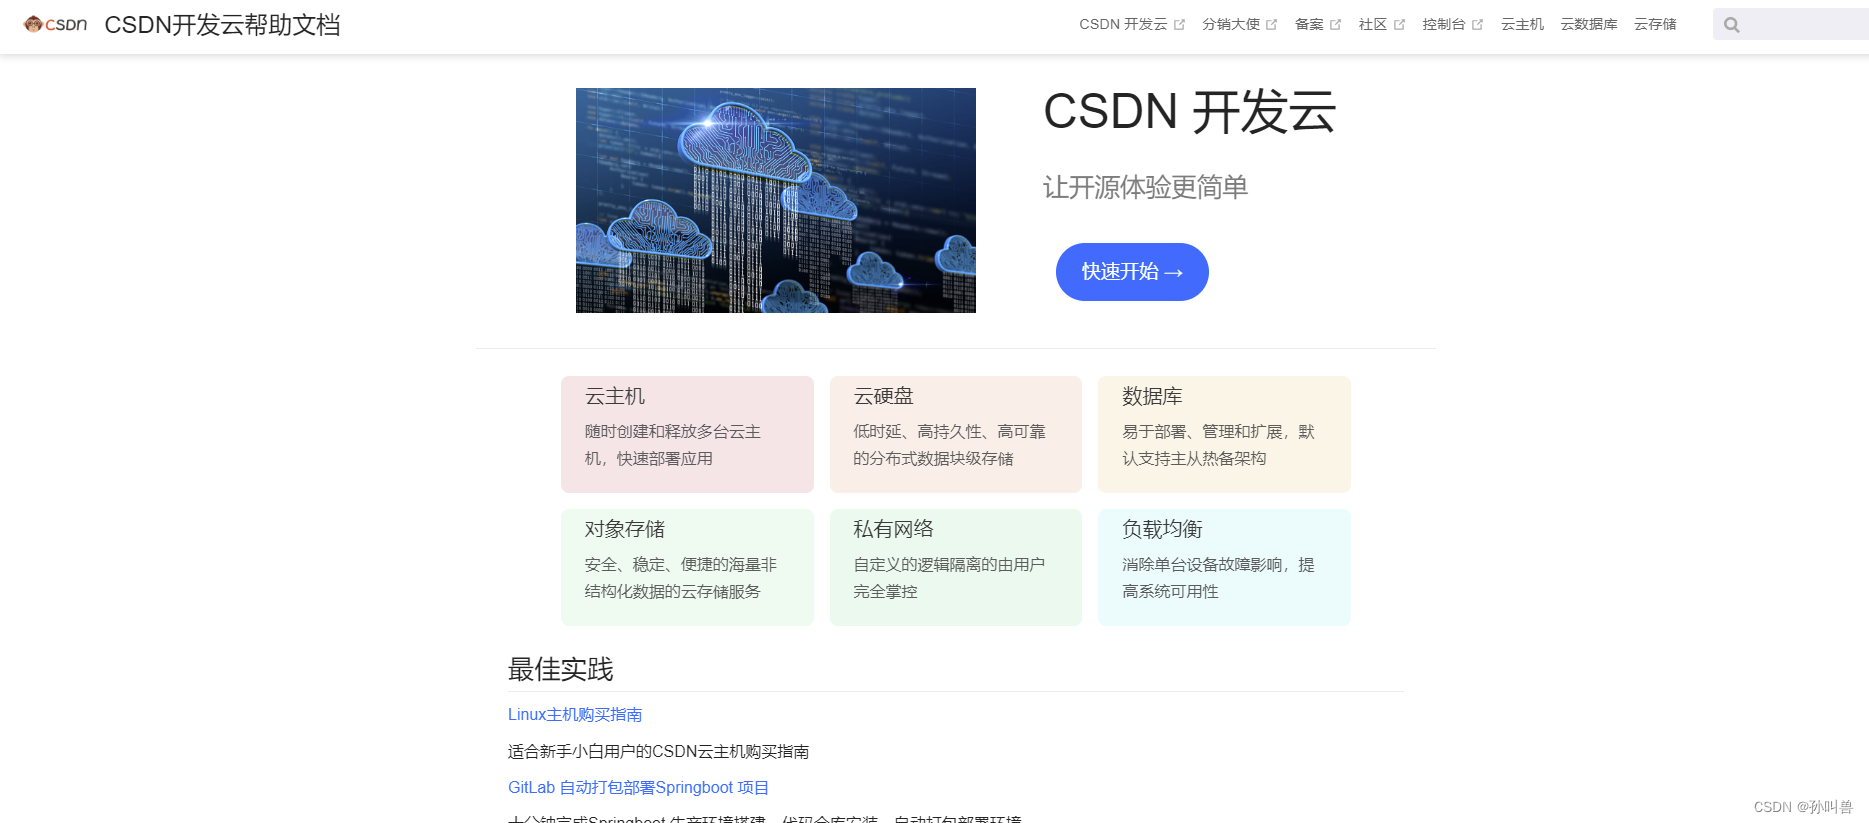 使用CSDN云服务搭建一个WordPress 个人站点(视频教程)